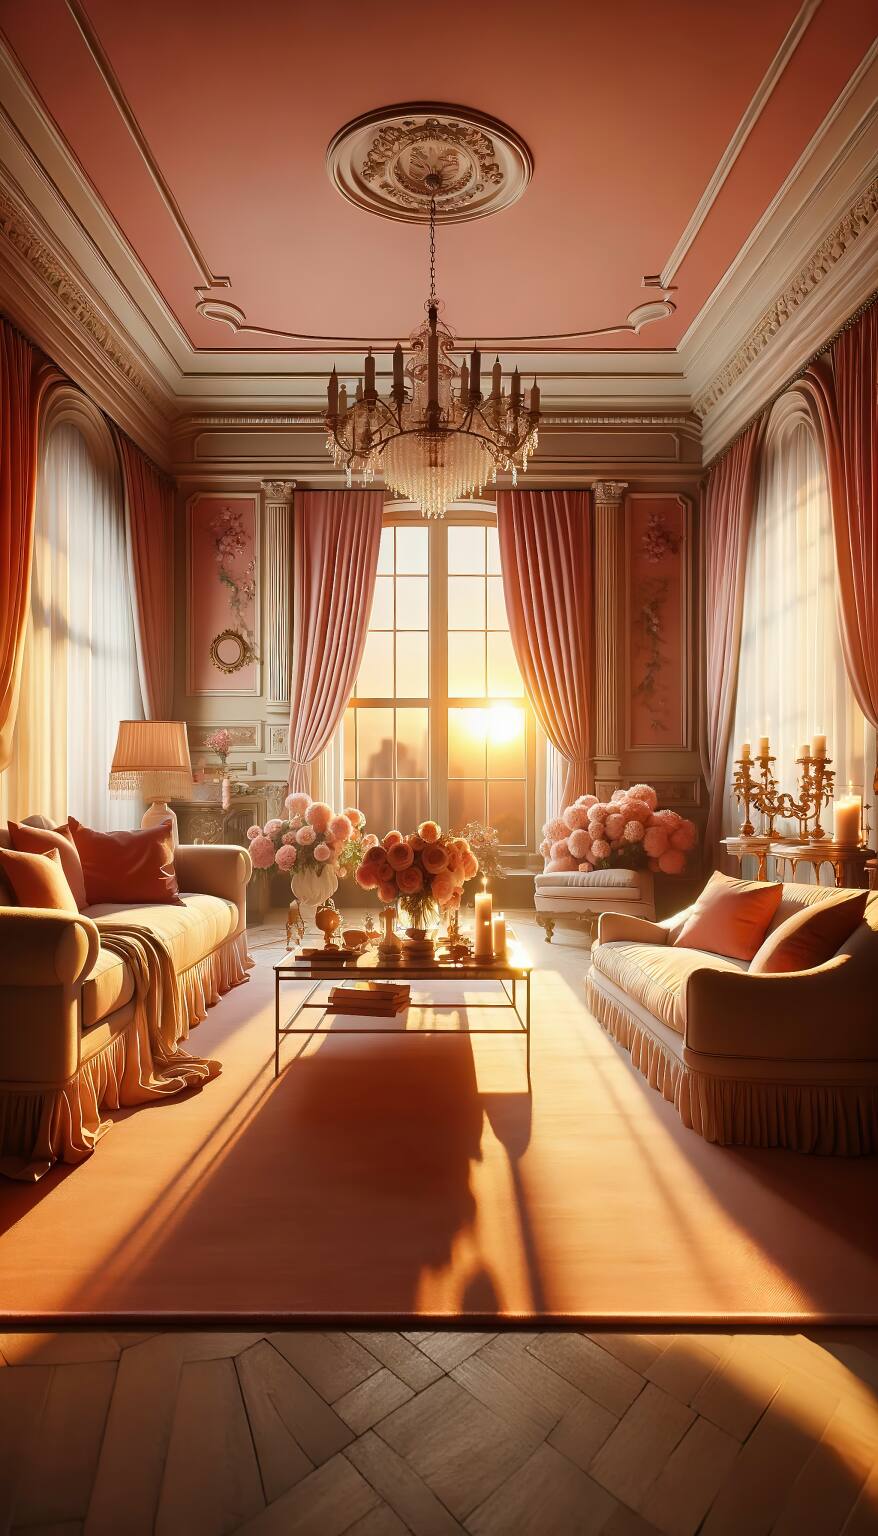 Ein Romantisches Wohnzimmer In Warmen Korallen- Und Beigetönen Mit Einem Bequemen Sofa, Einem Eleganten Sessel Und Einem Schicken Couchtisch.